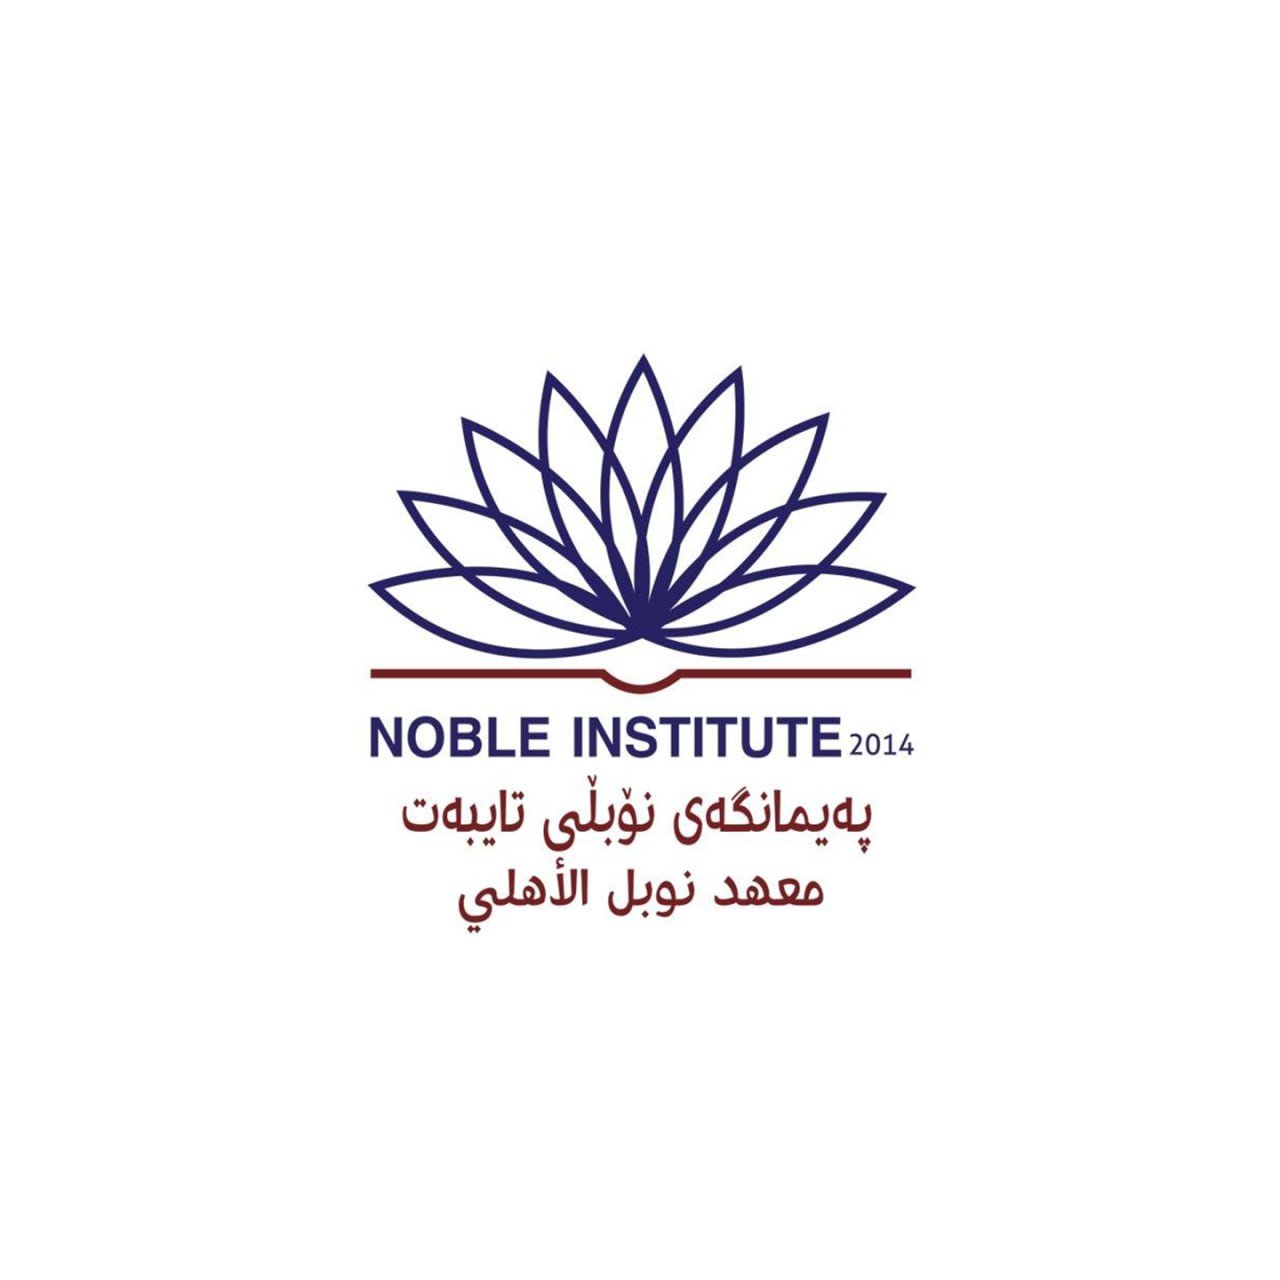 Noble Institute